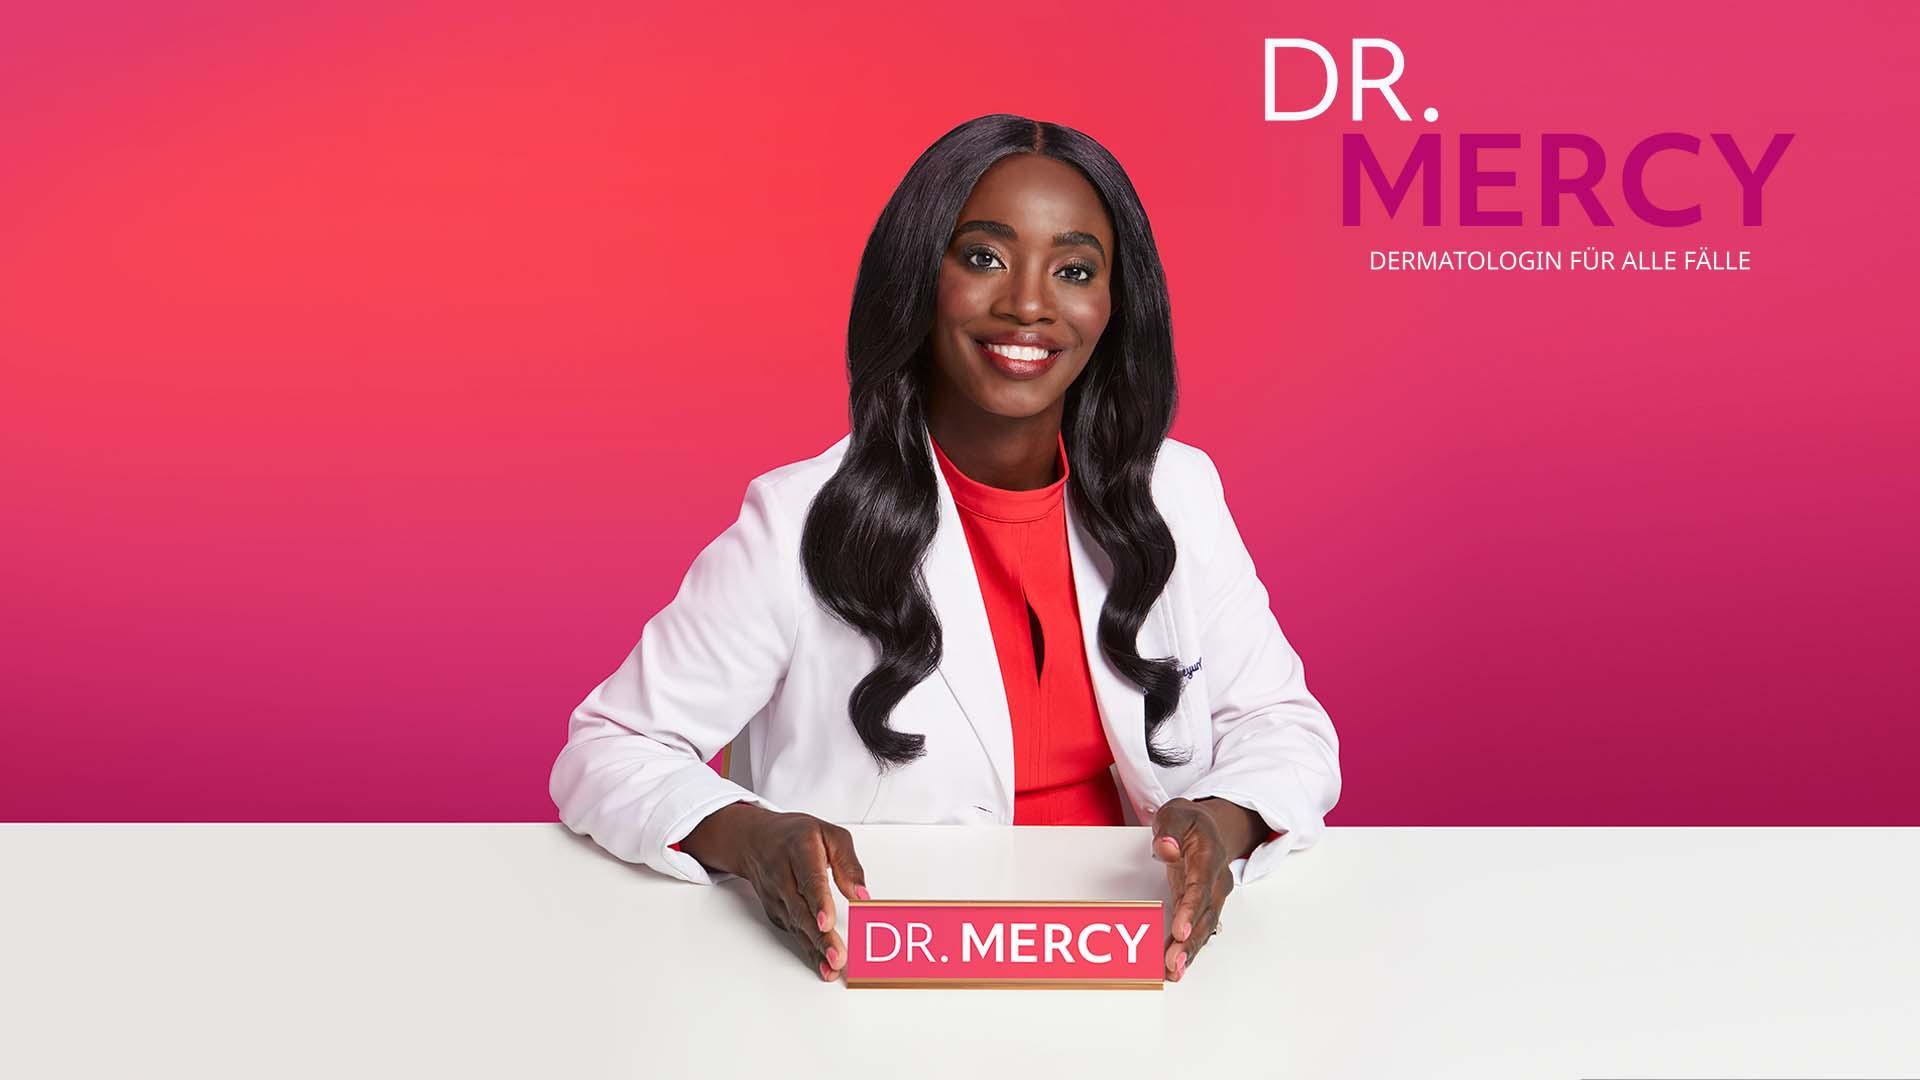 Dr Mercy Dermatologin Für Alle Fälle Kostenlos Online Sehen Tlc 